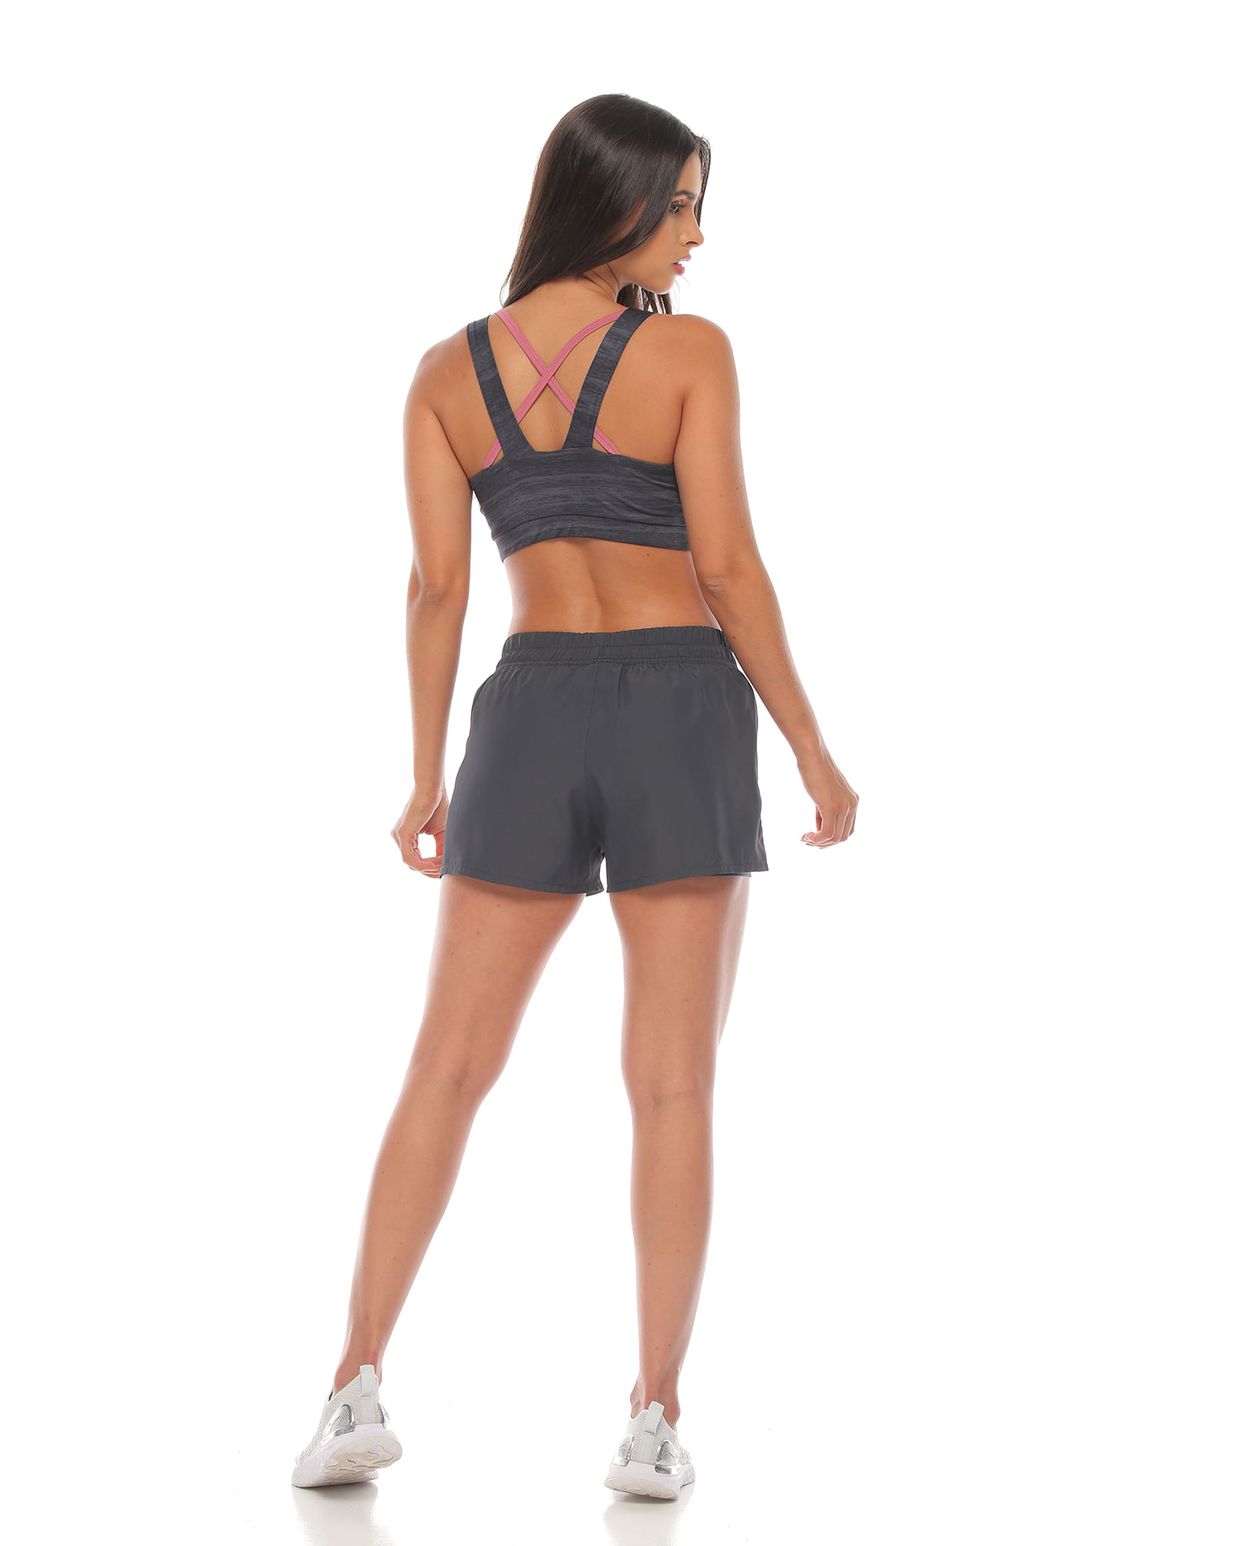 modelo con pantaloneta running deportiva color gris con fit interior y top deportivo gris para mujer parte trasera